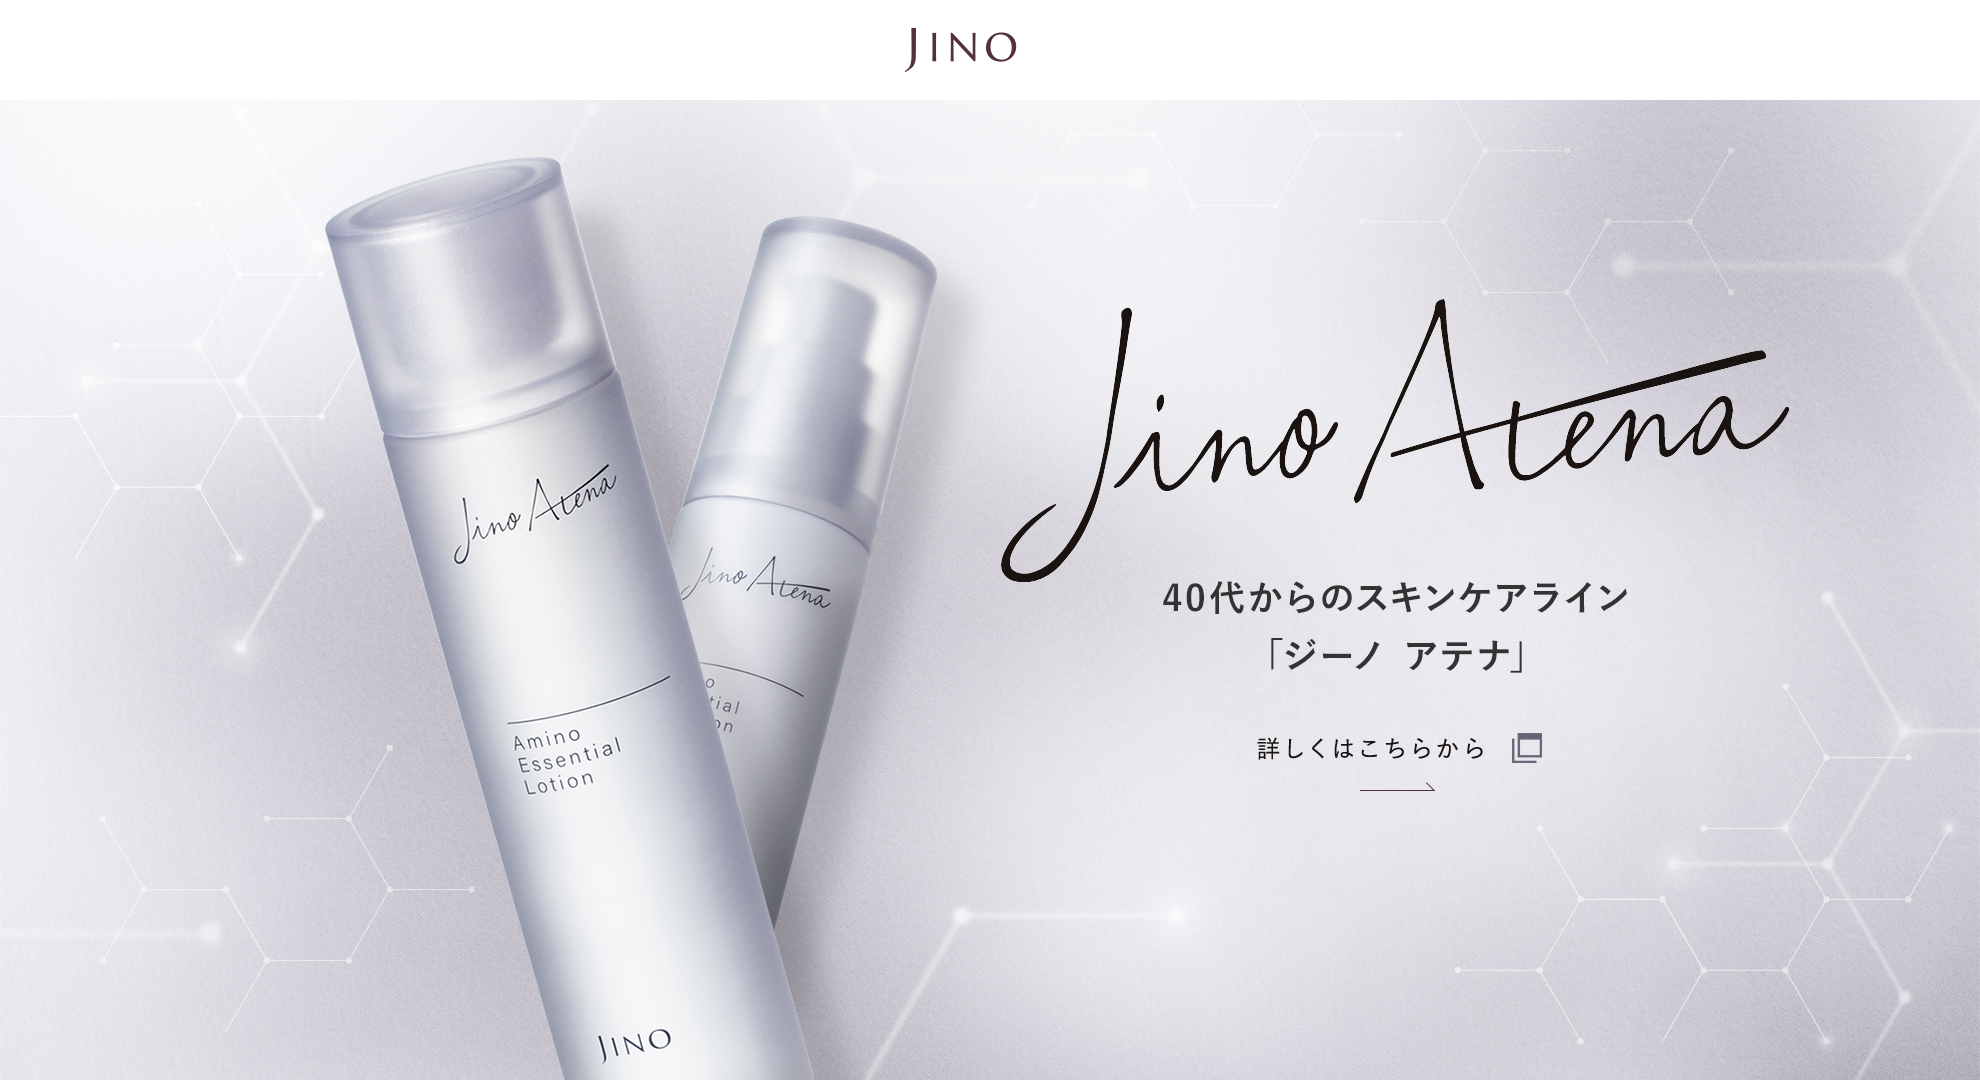 JINO ブランドサイトへ